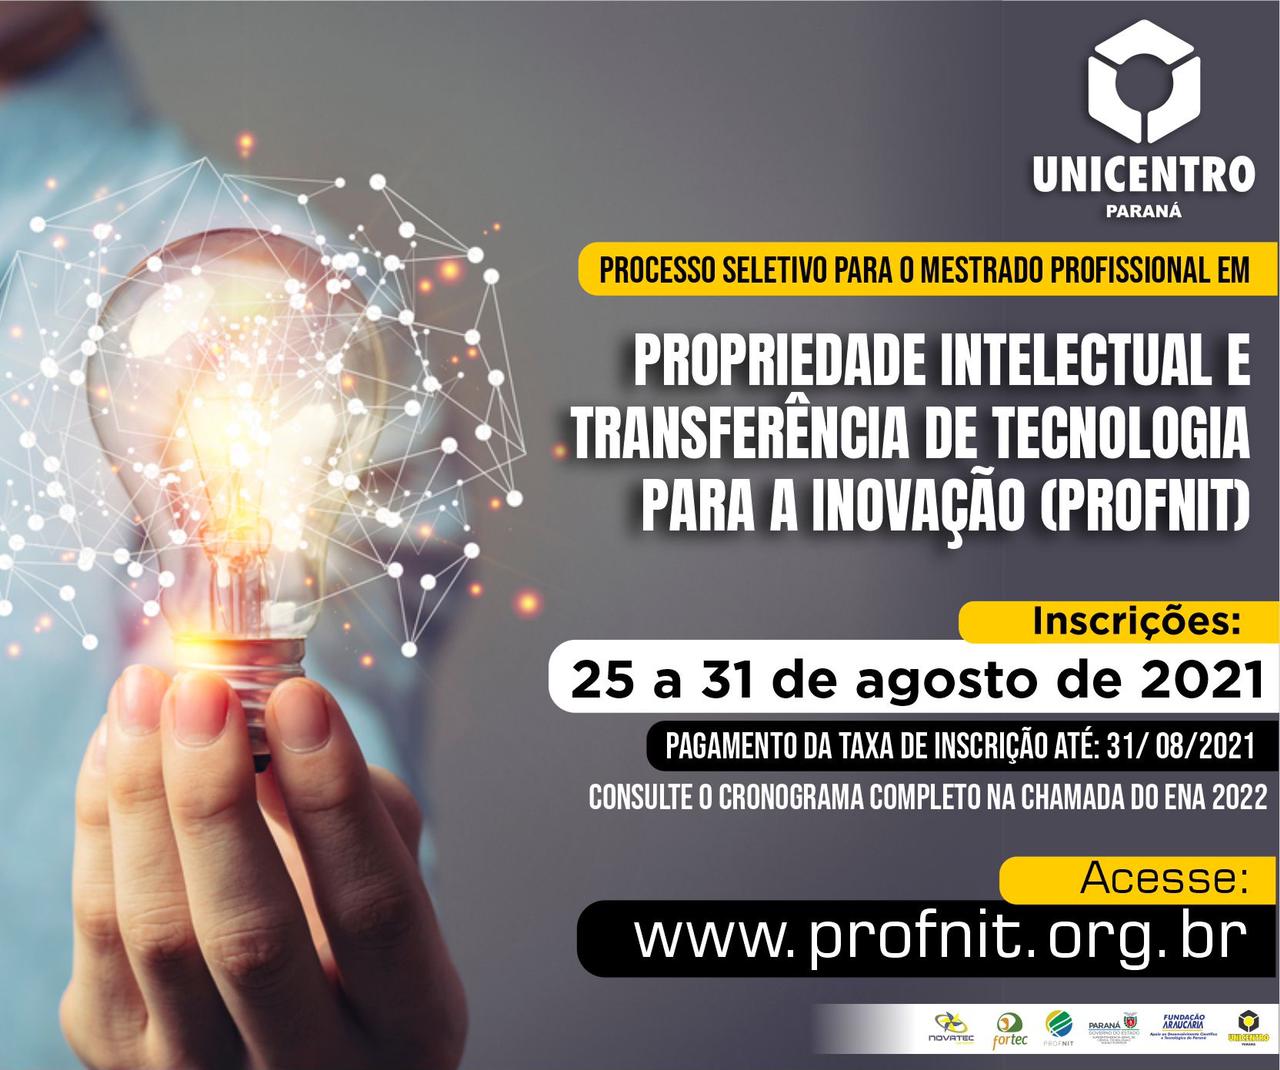 Mestrado Profissional em Propriedade Intelectual e Transferência de Tecnologia para Inovação abre inscrições nessa quarta, 25